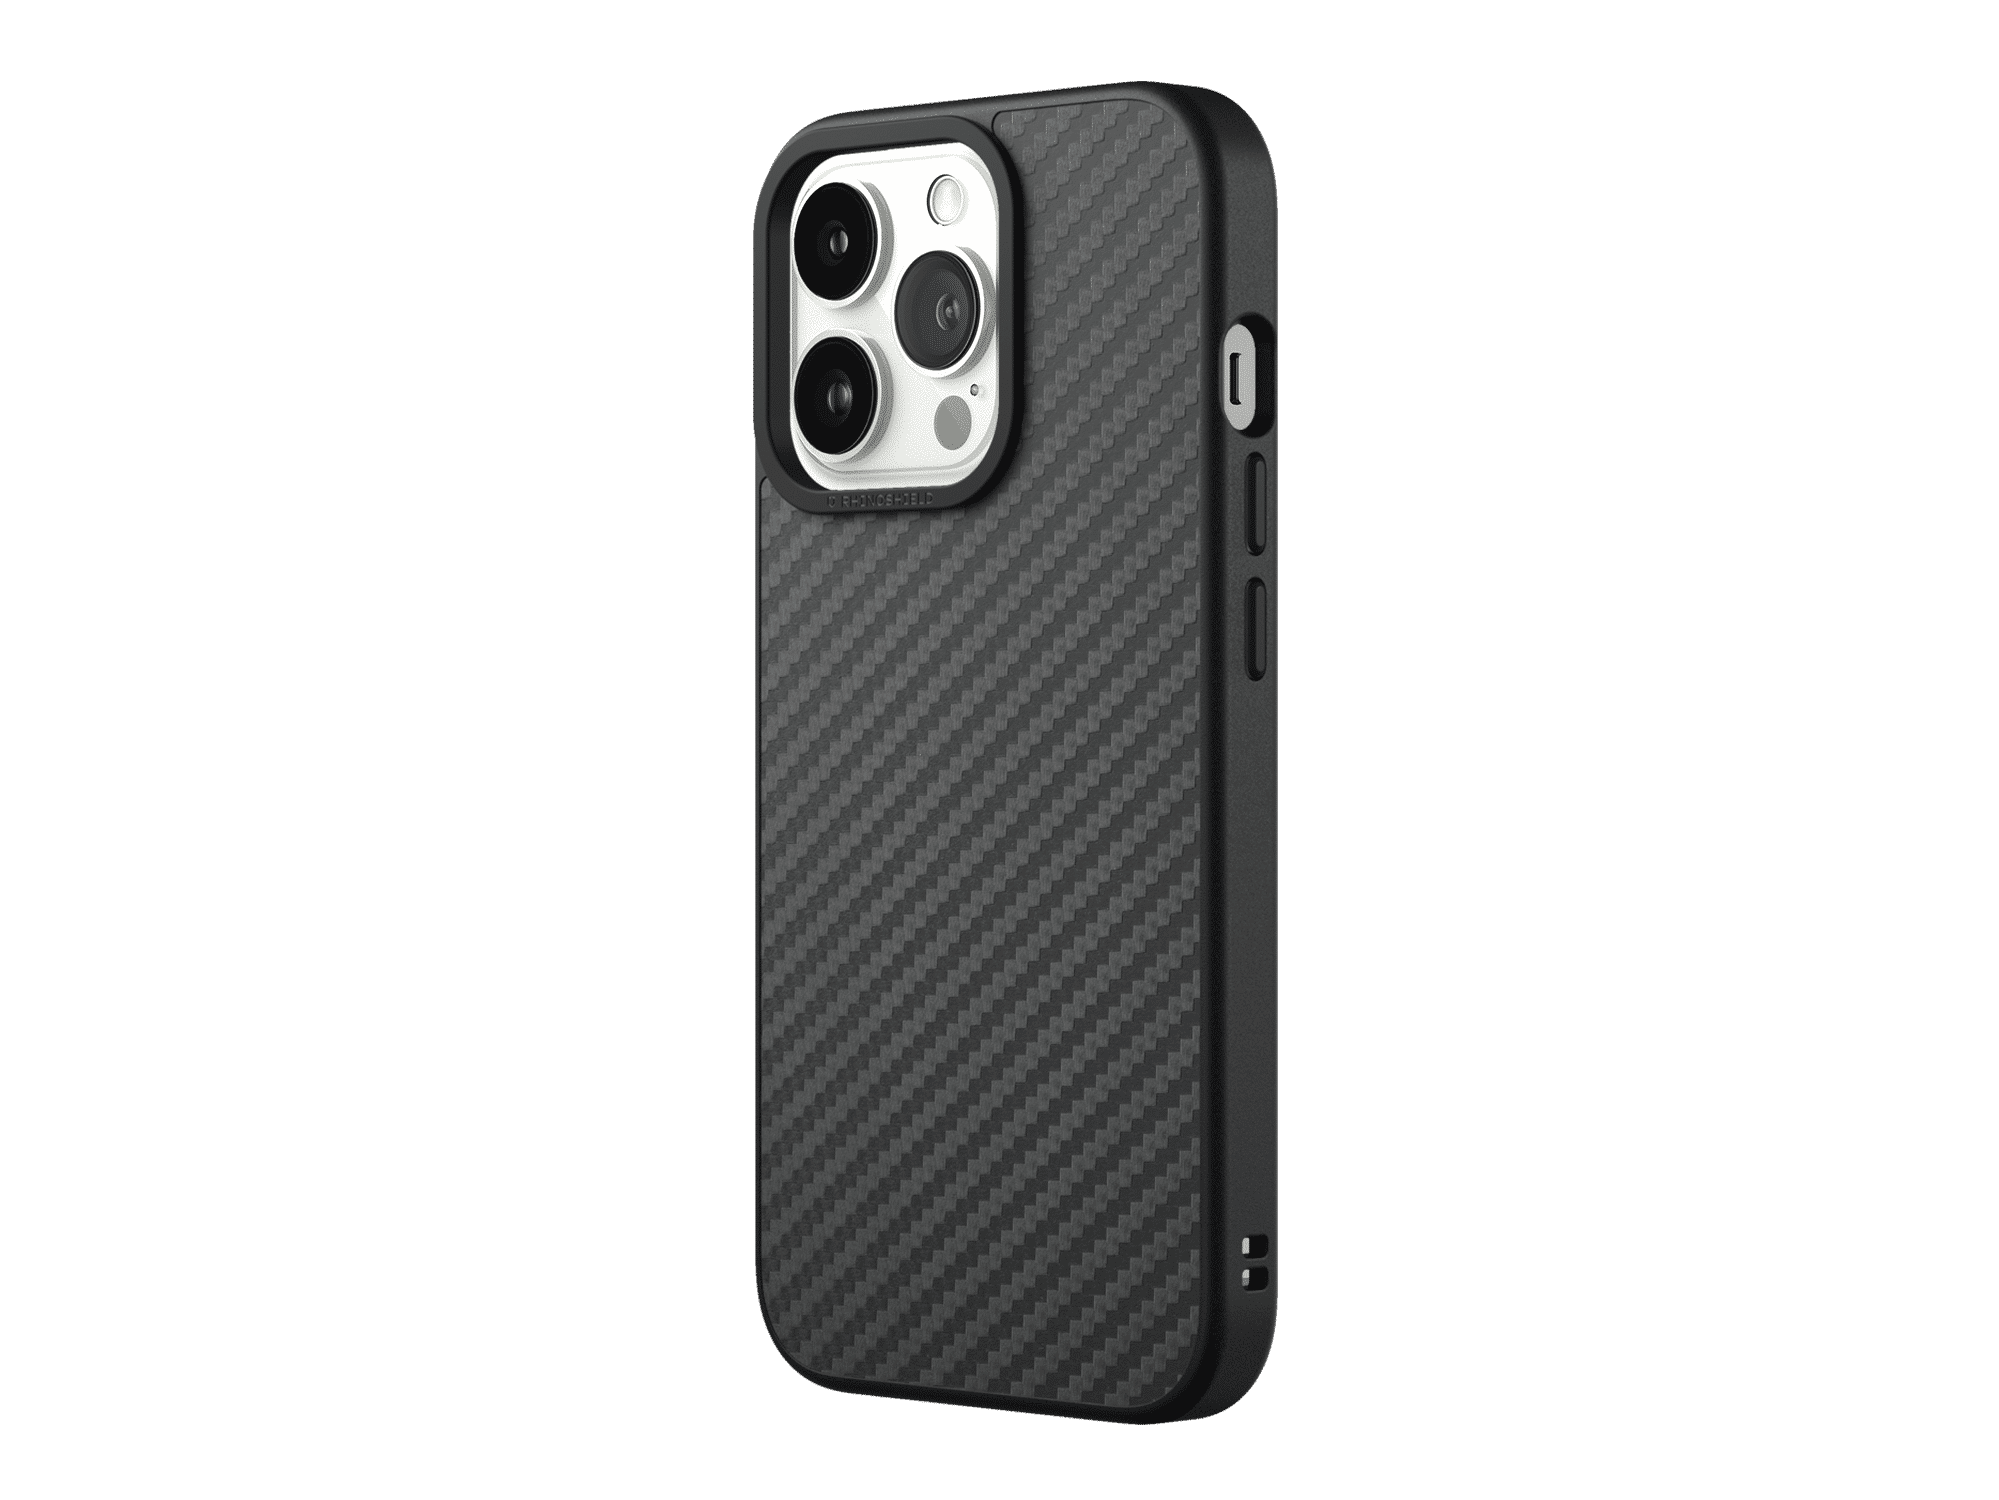 เคส RhinoShield รุ่น SolidSuit - iPhone 13 Pro - Carbon / Black